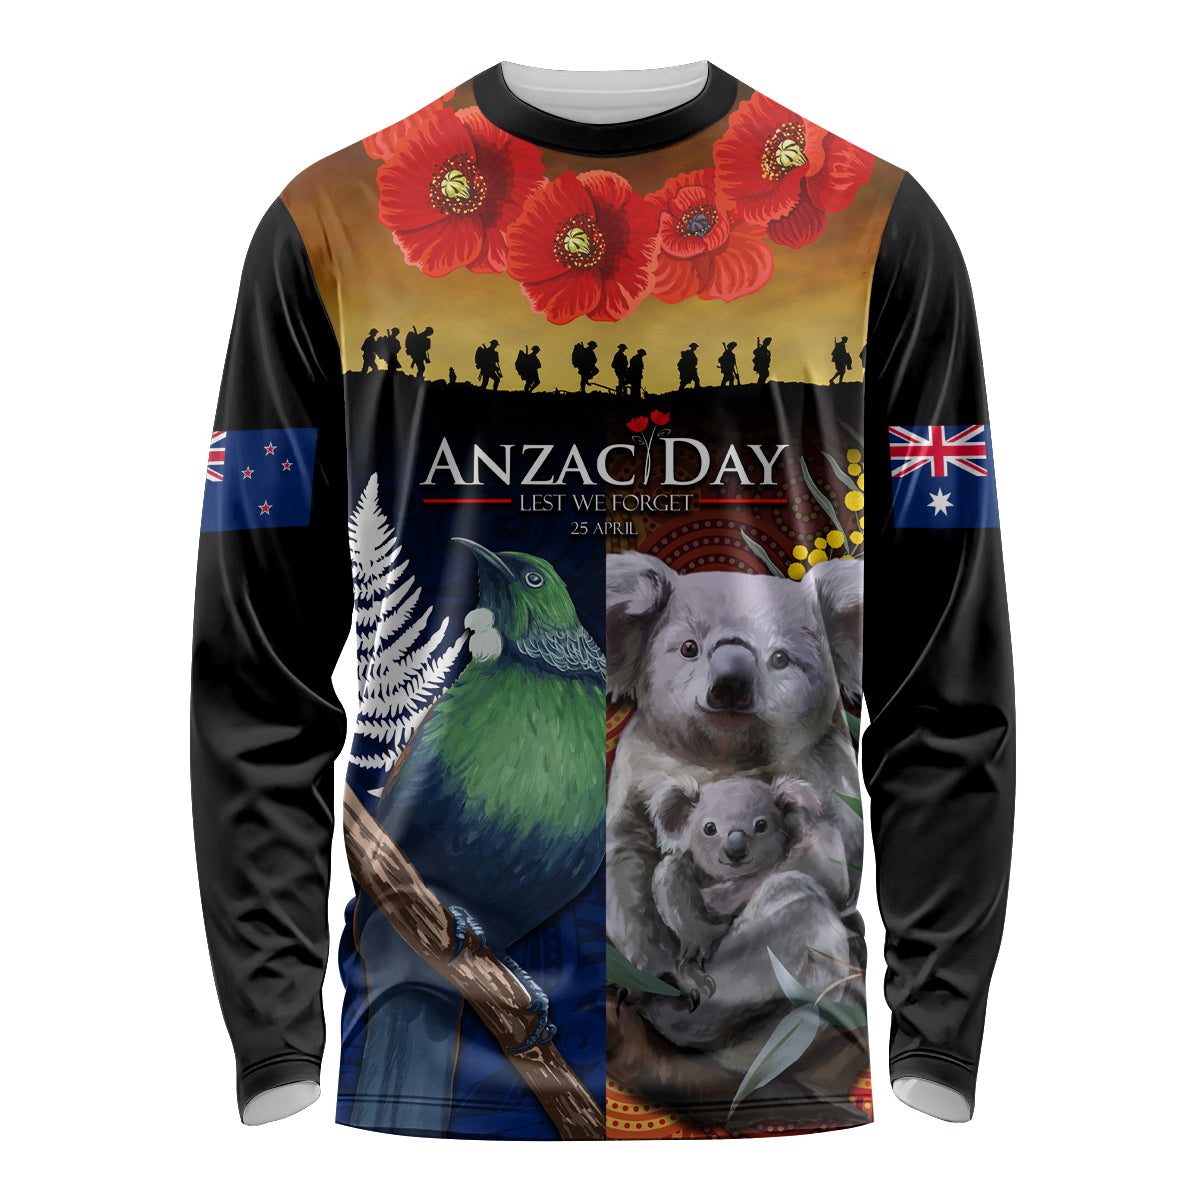 Australia and New Zealand ANZAC Day Long Sleeve Shirt Tui Bird and Koala mix Maori and Aboriginal Pattern